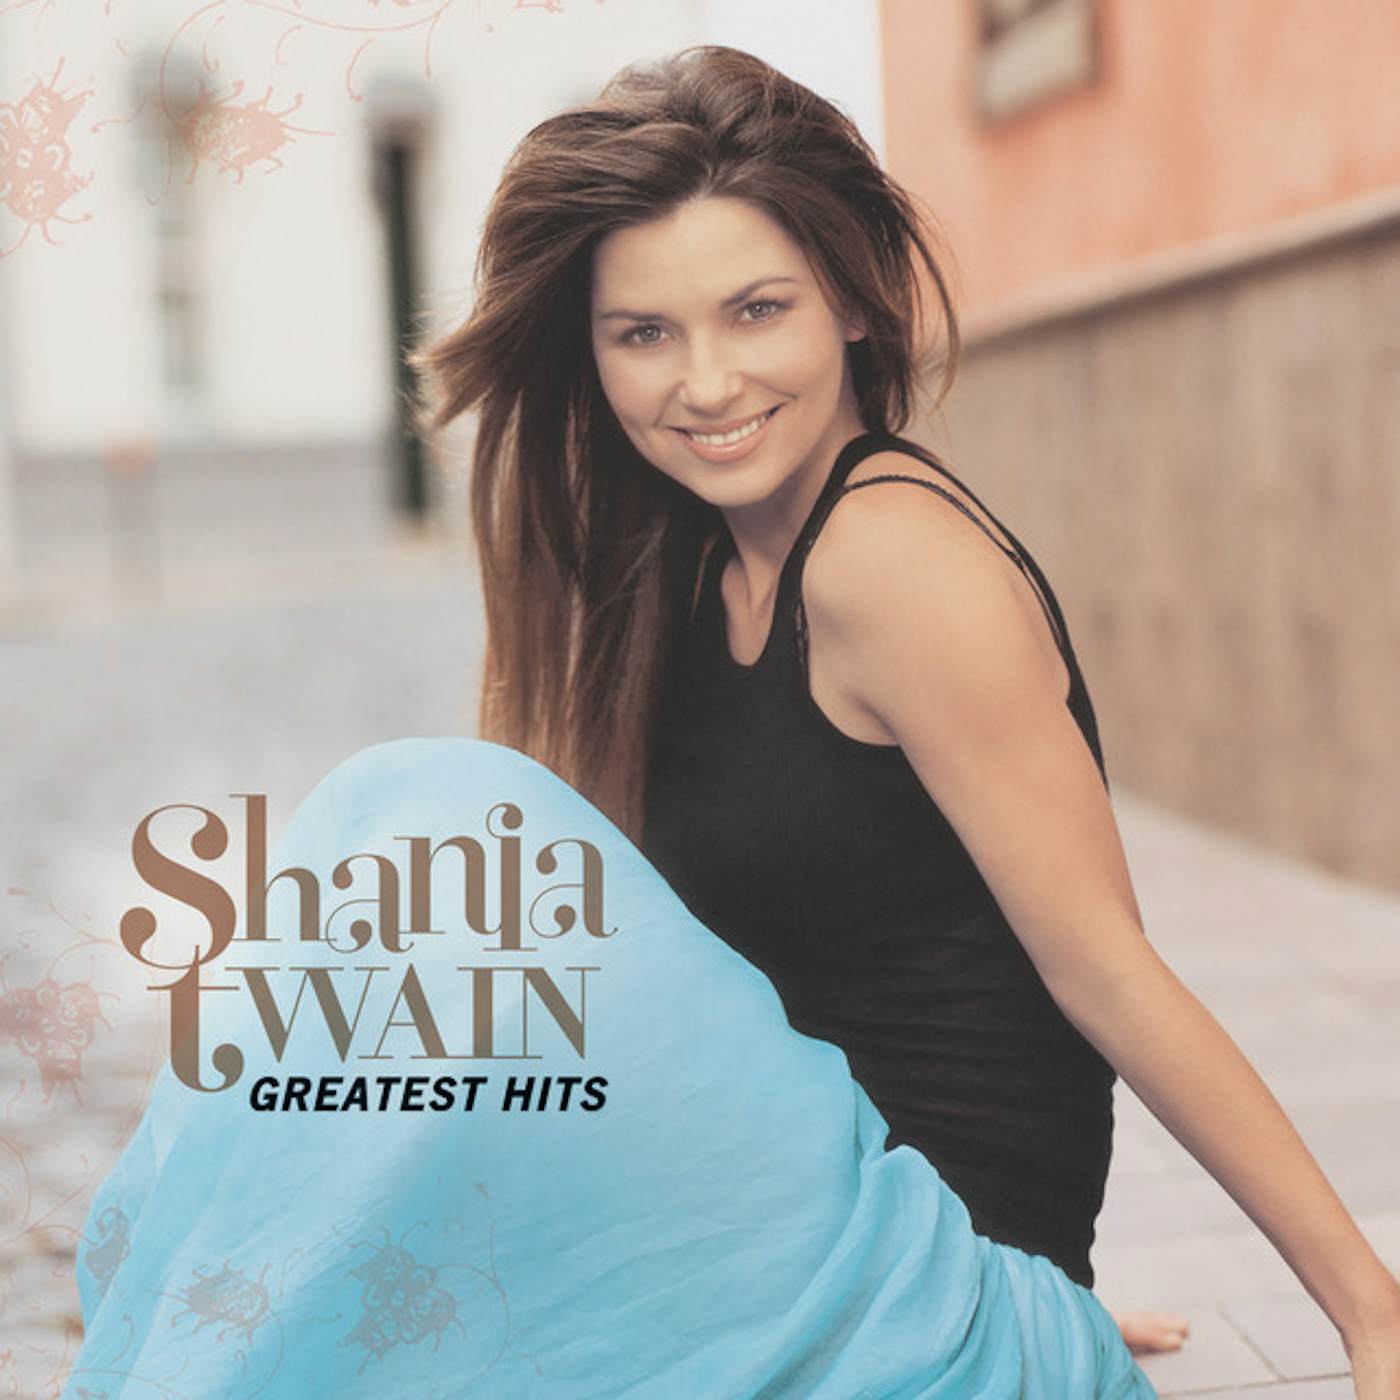 Shania Twain Greatest Hits Vinyl Record